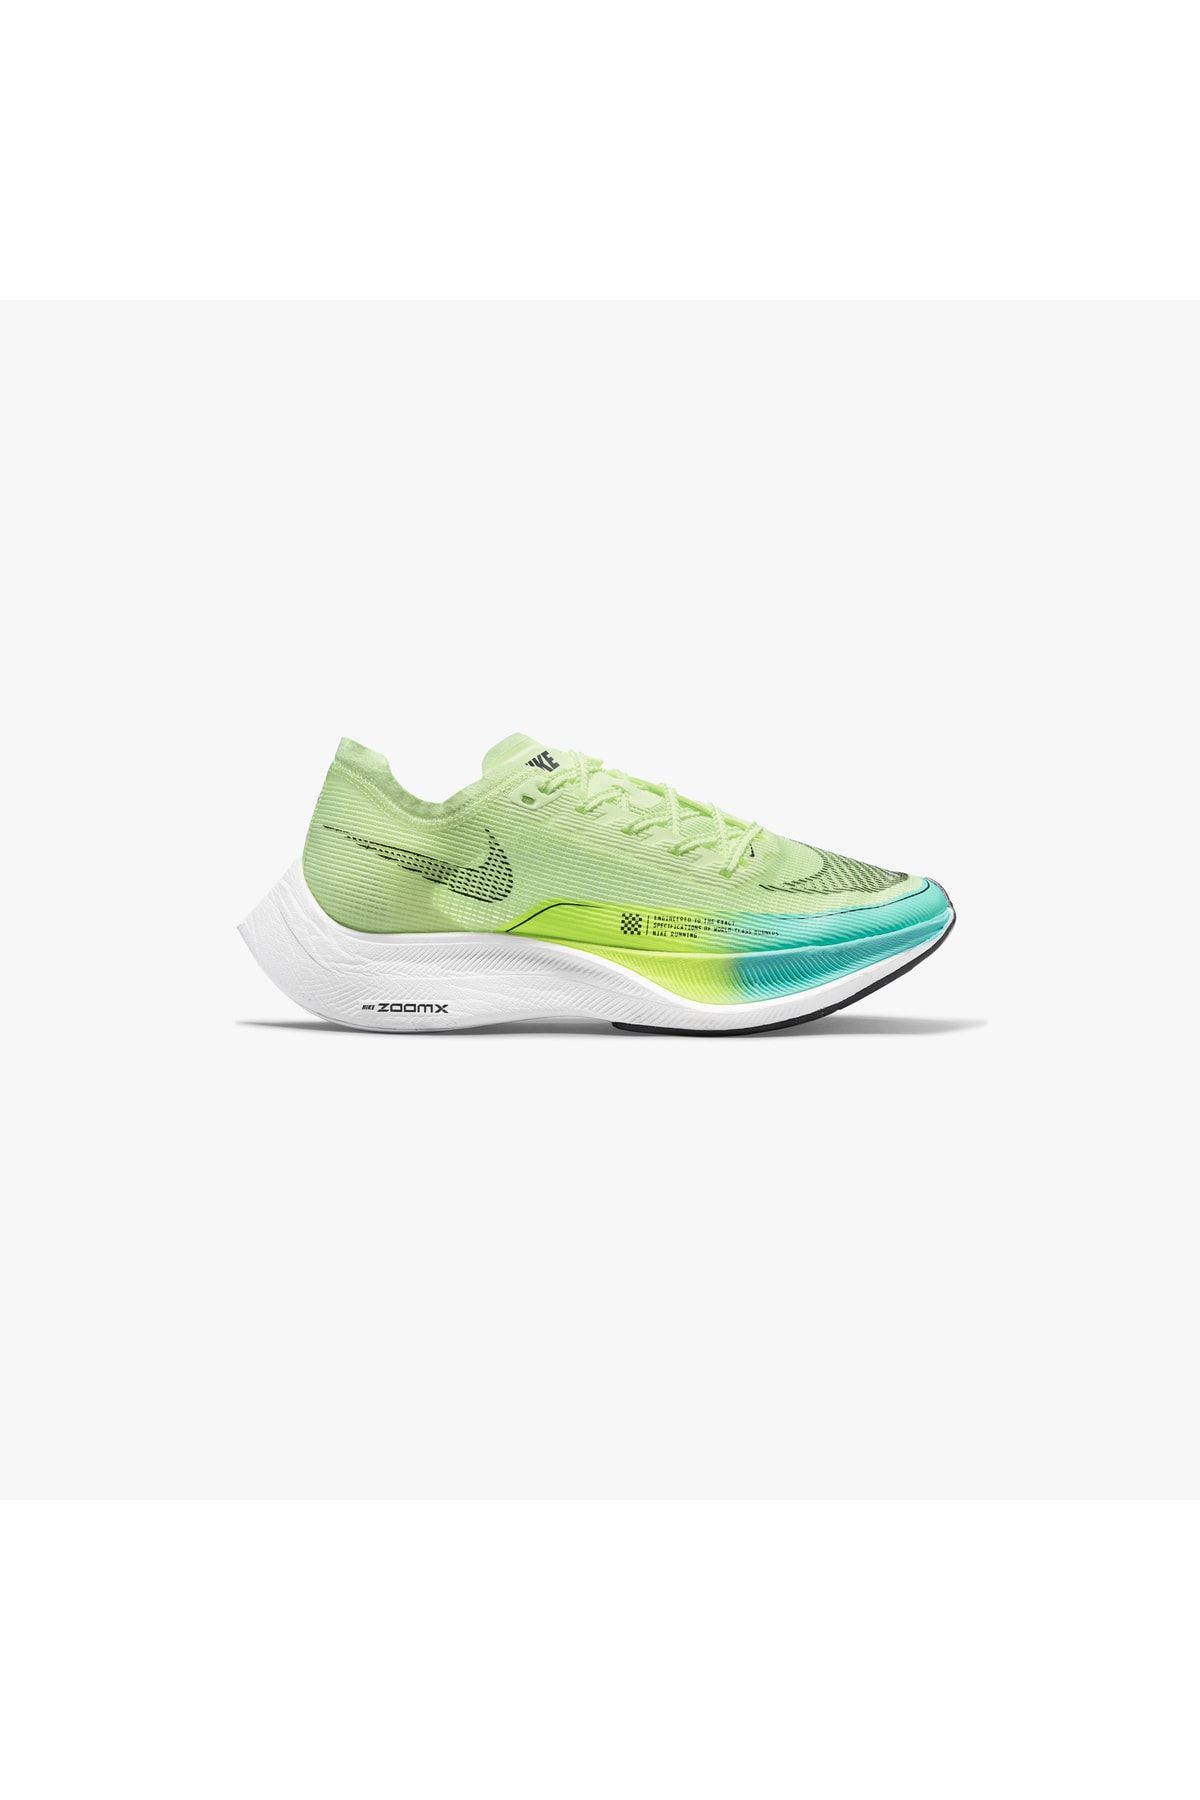 Nike (wmns) Zoomx Vaporfly Kadın Pro Koşu Ayakkabısı